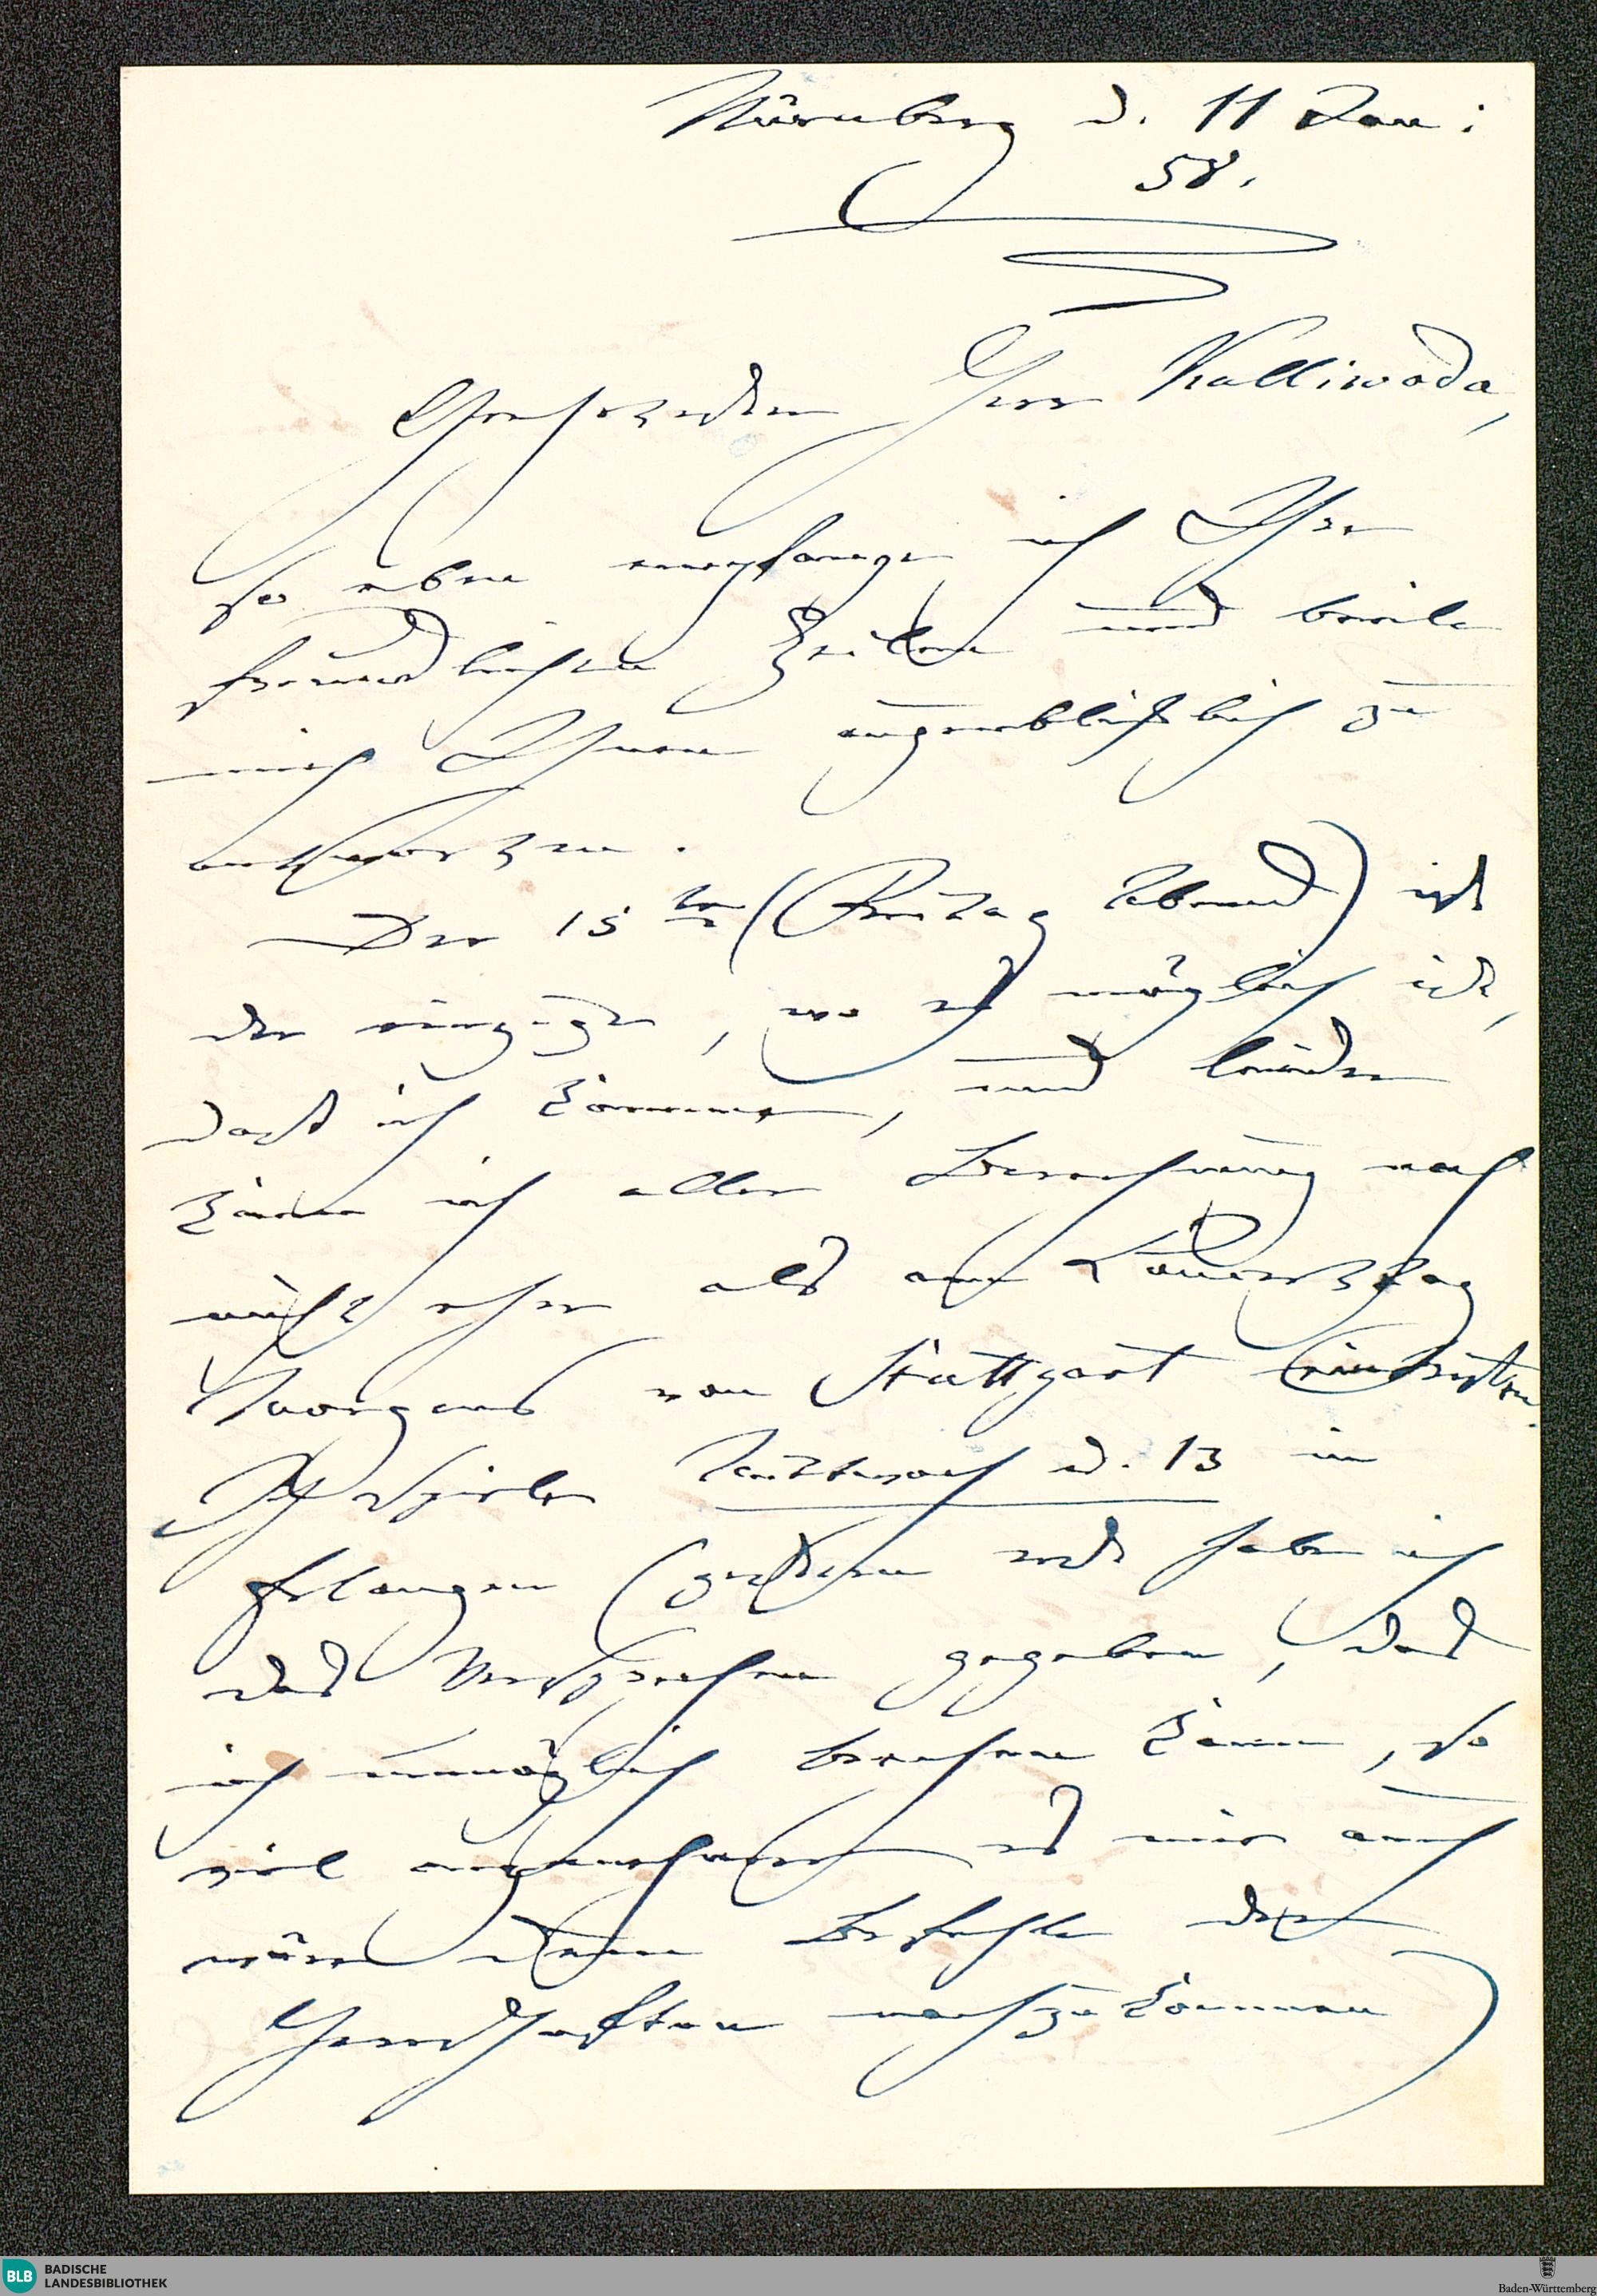 Der Screenshot zeigt die erste Seite des Briefs von Clara Schumann an Wilhelm Kalliwoda vom 11. Januar 1858.